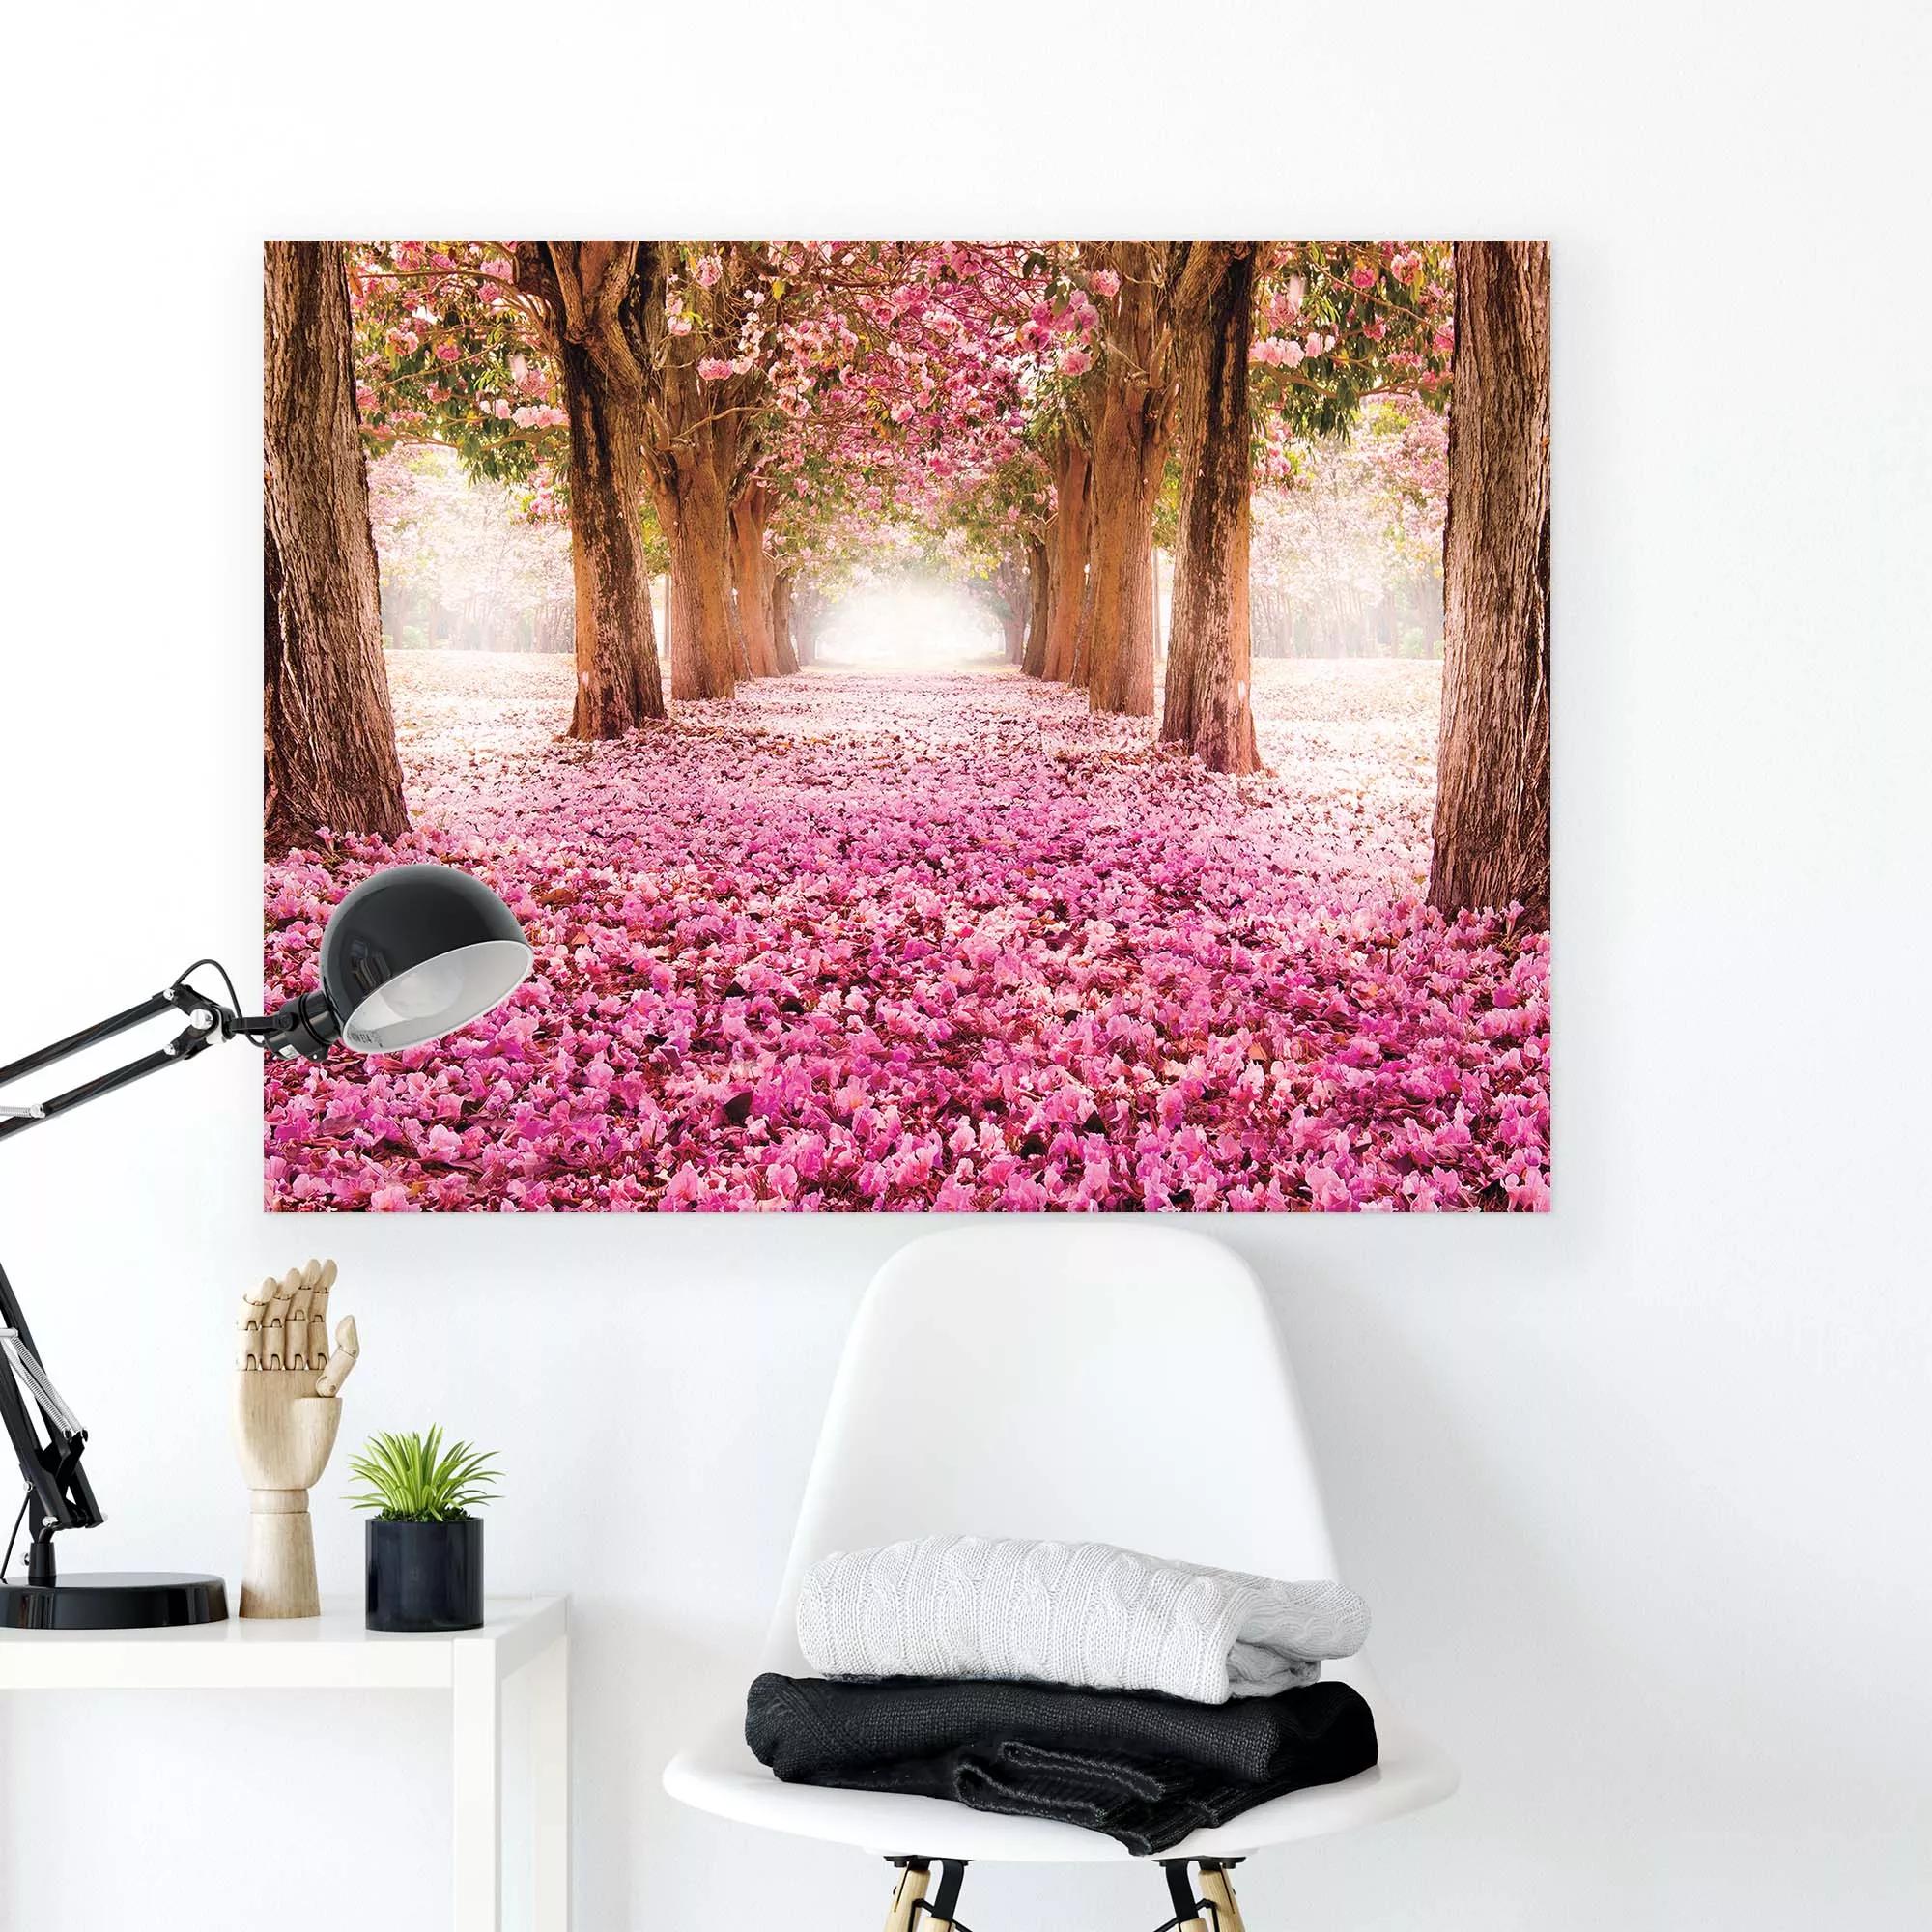 Vászonkép romantikus virágbaborúlt erdei tájképpel